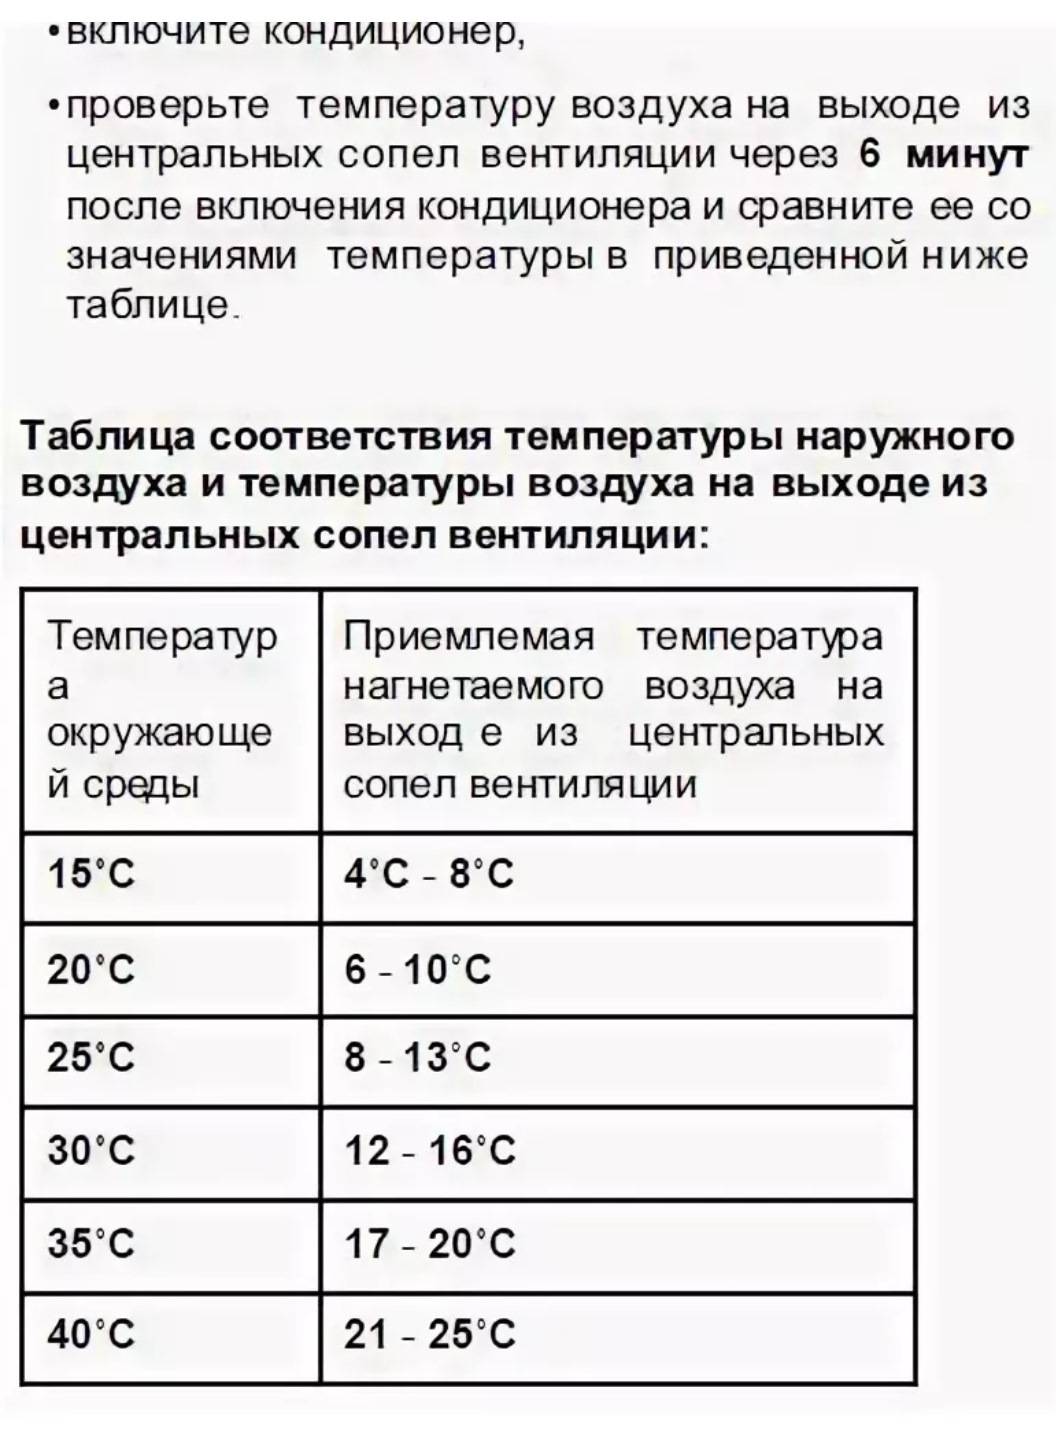 При какой минусовой температуре можно включать кондиционер. эксплуатация кондиционера в зимний период